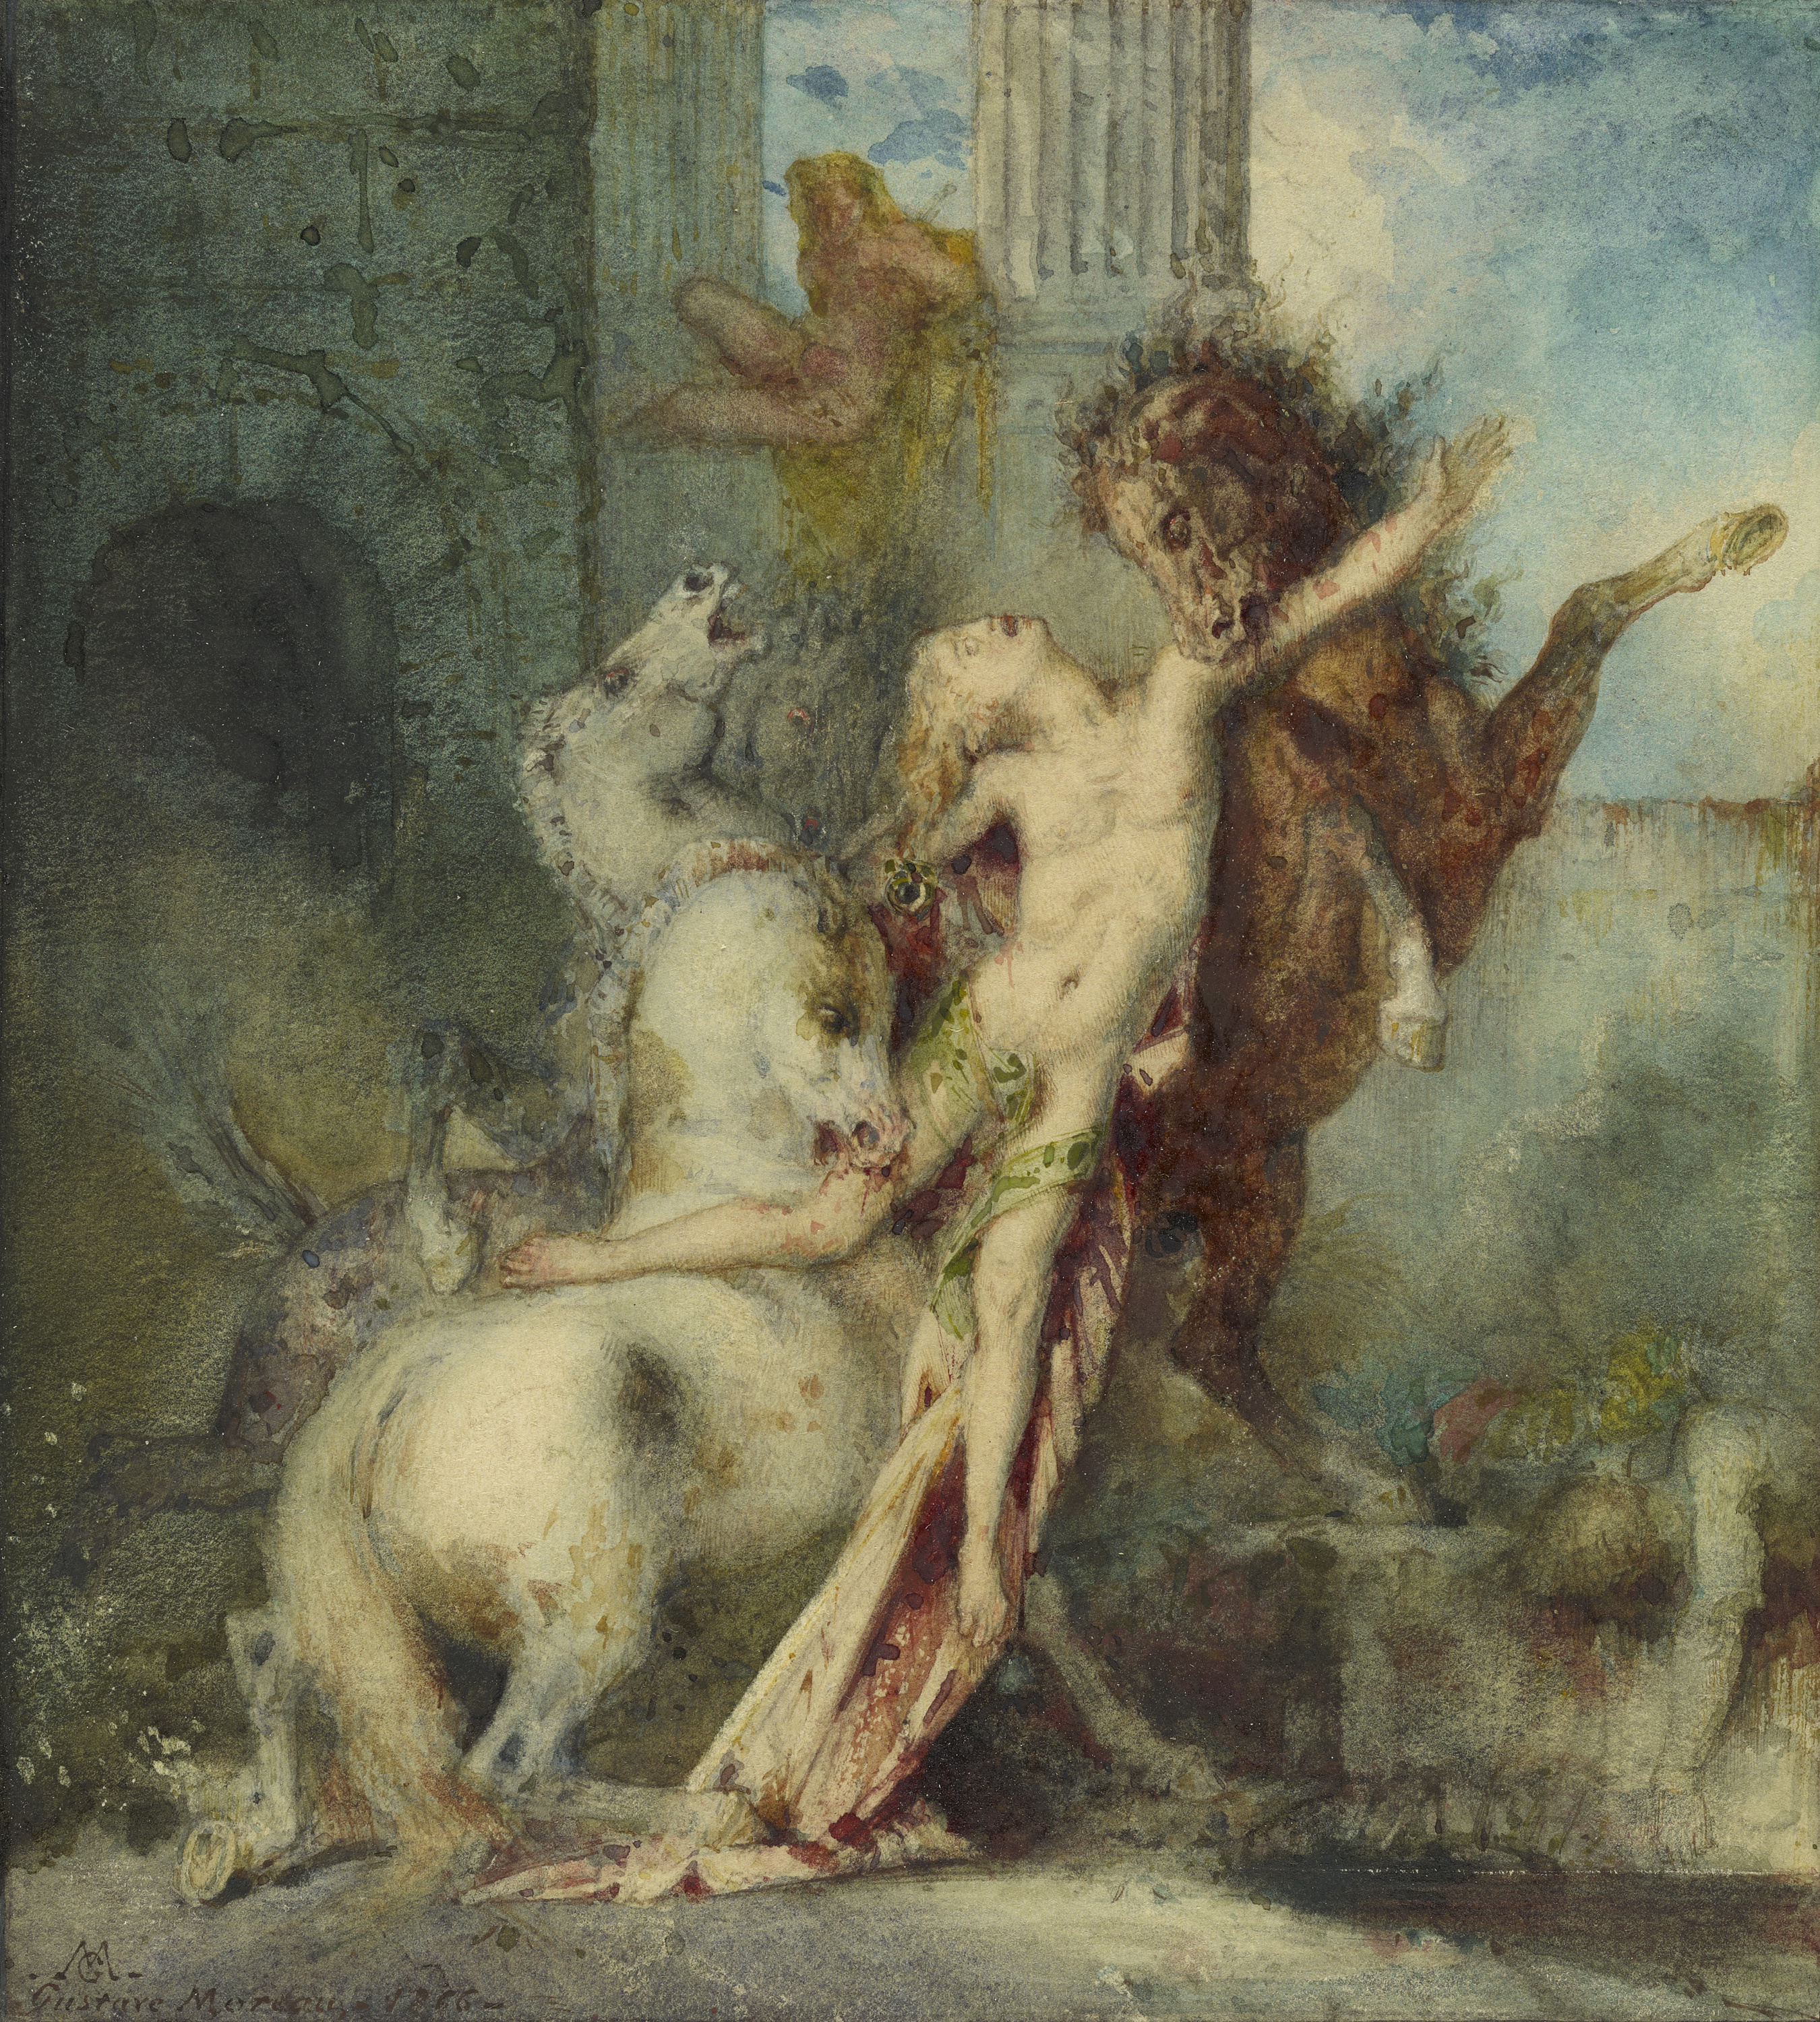 Diomédész amint megeszik a lovai by Gustave Moreau - 1866 - 21.4 x 19.7 cm 